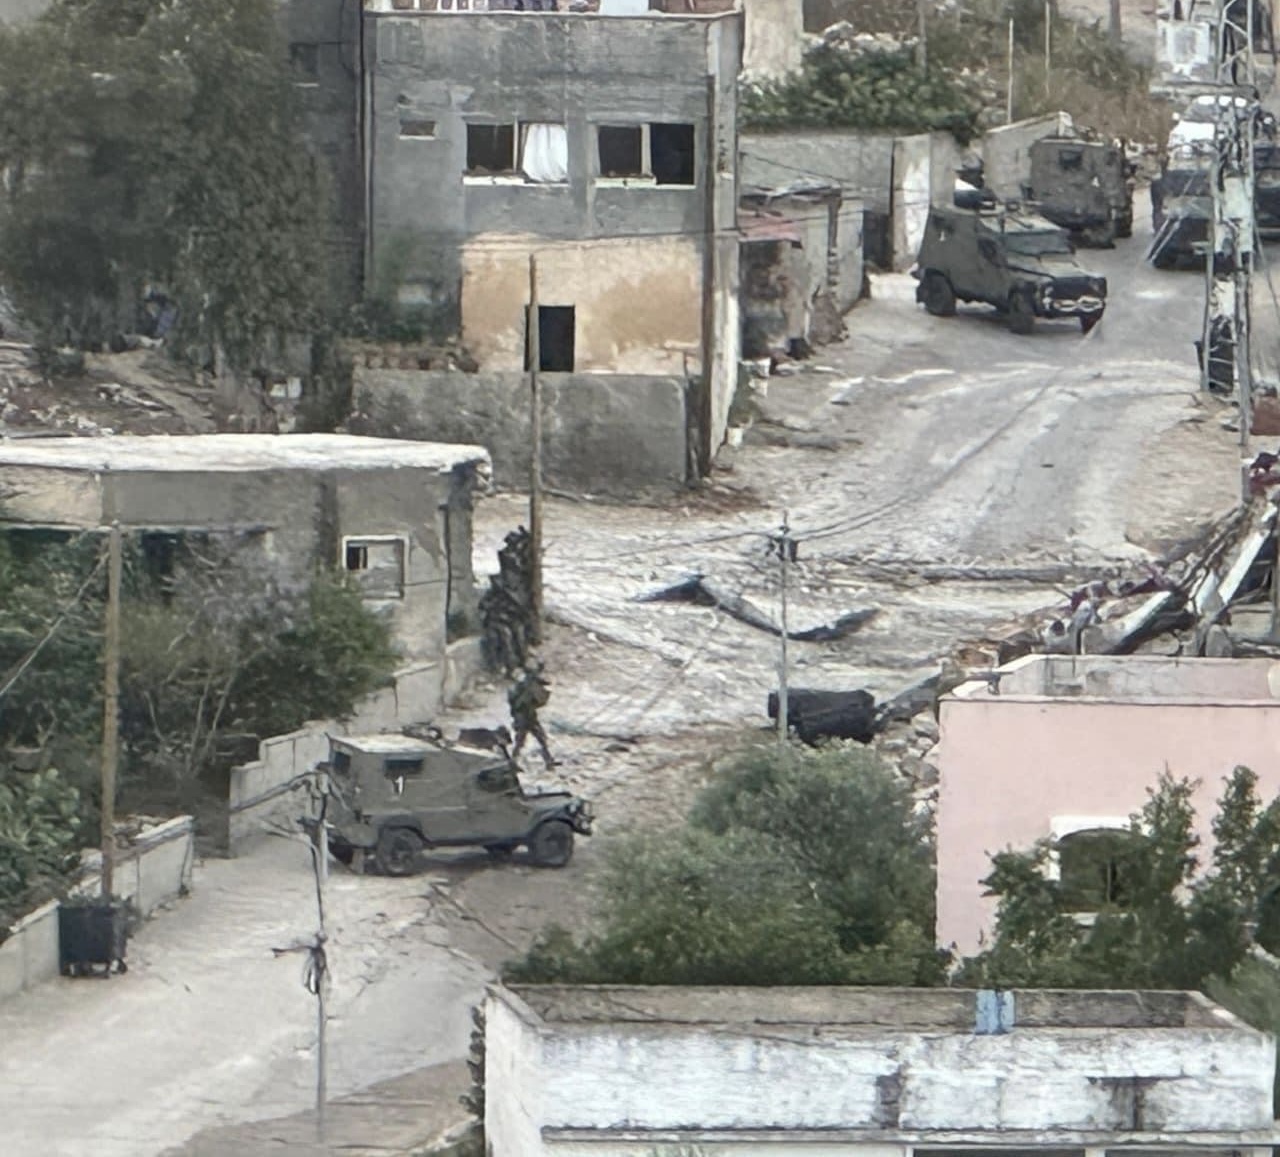 طولكرم: انتشال جثمان شهيد من داخل المنزل الذي هدمه الاحتلال في دير الغصون وسط دمار واسع في محيط المكان